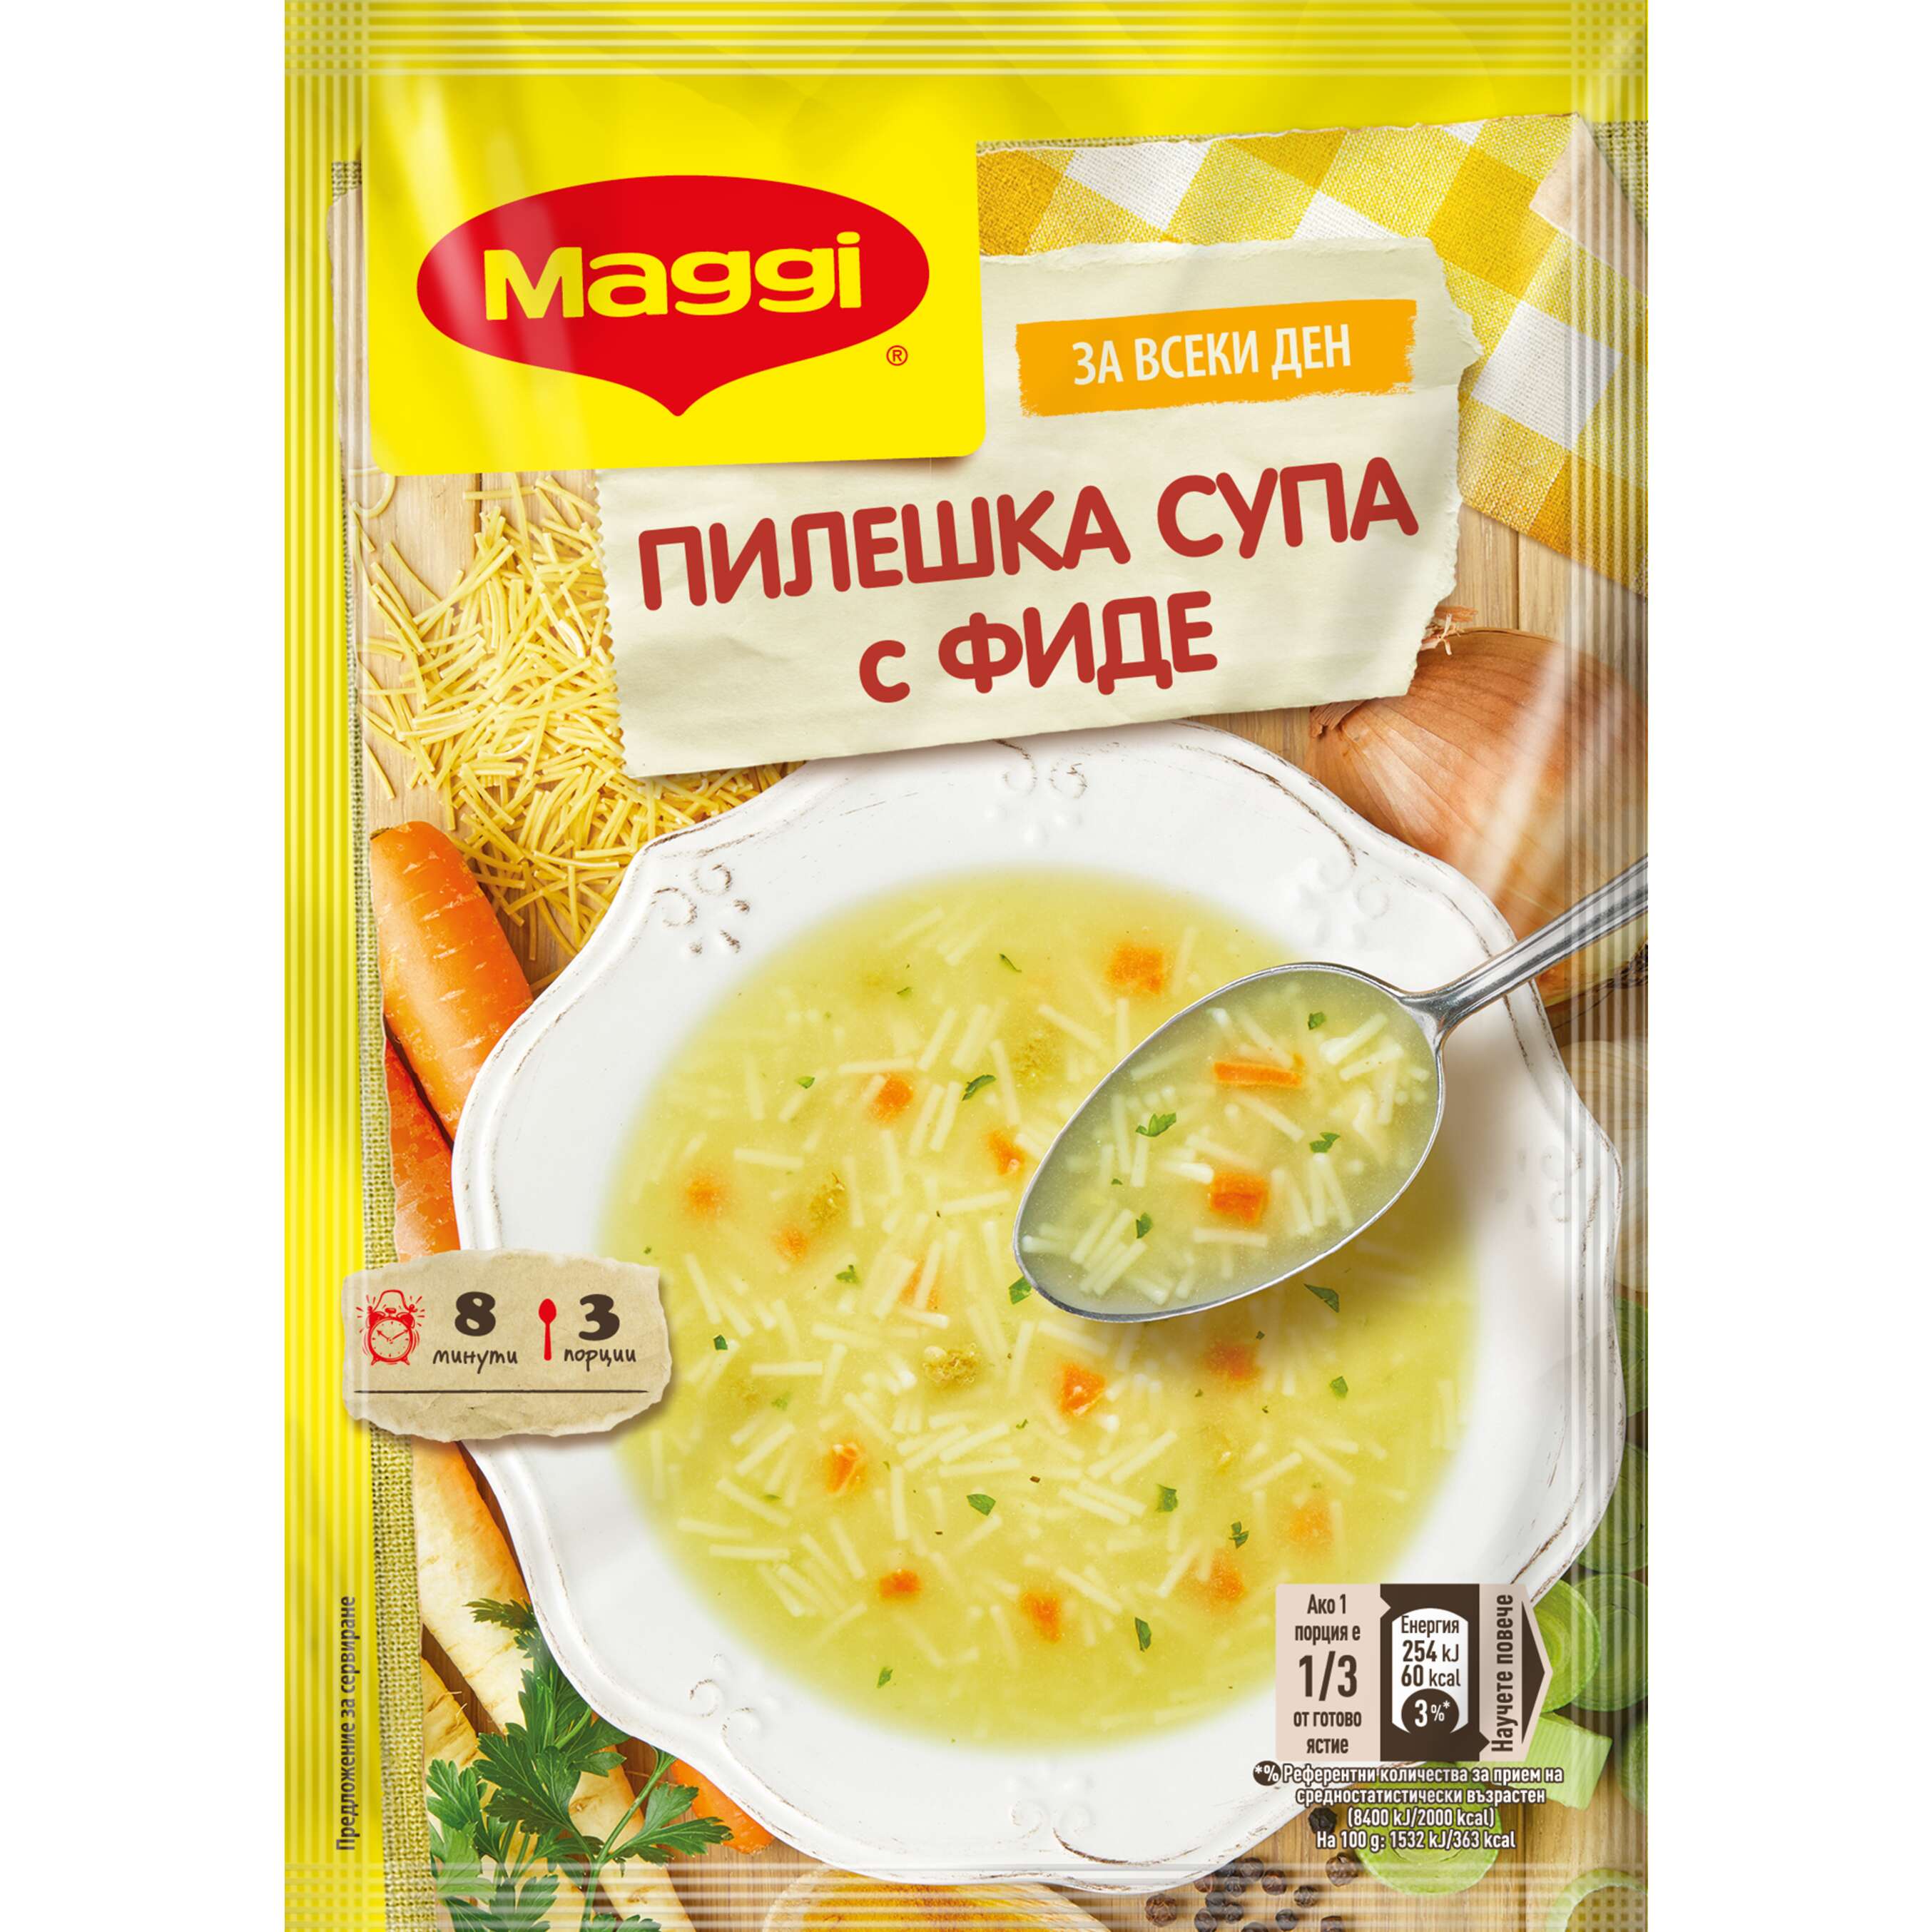 Изображение за продукта Maggi Супа различни видове